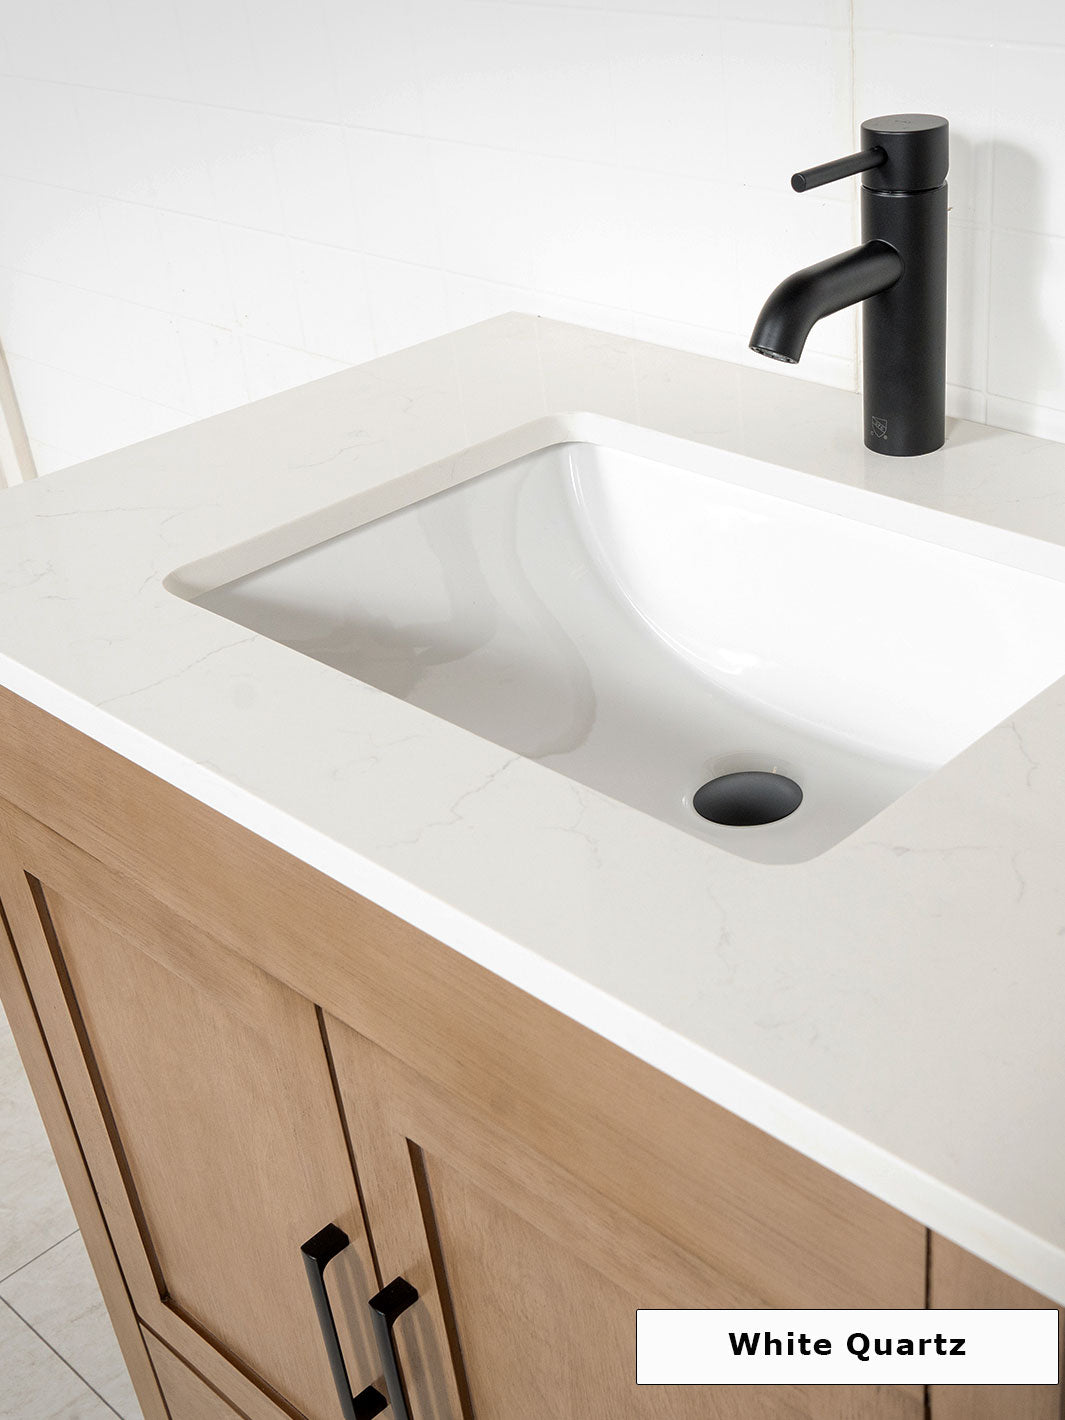 white quartz counter on the white oak vanity. black round faucet